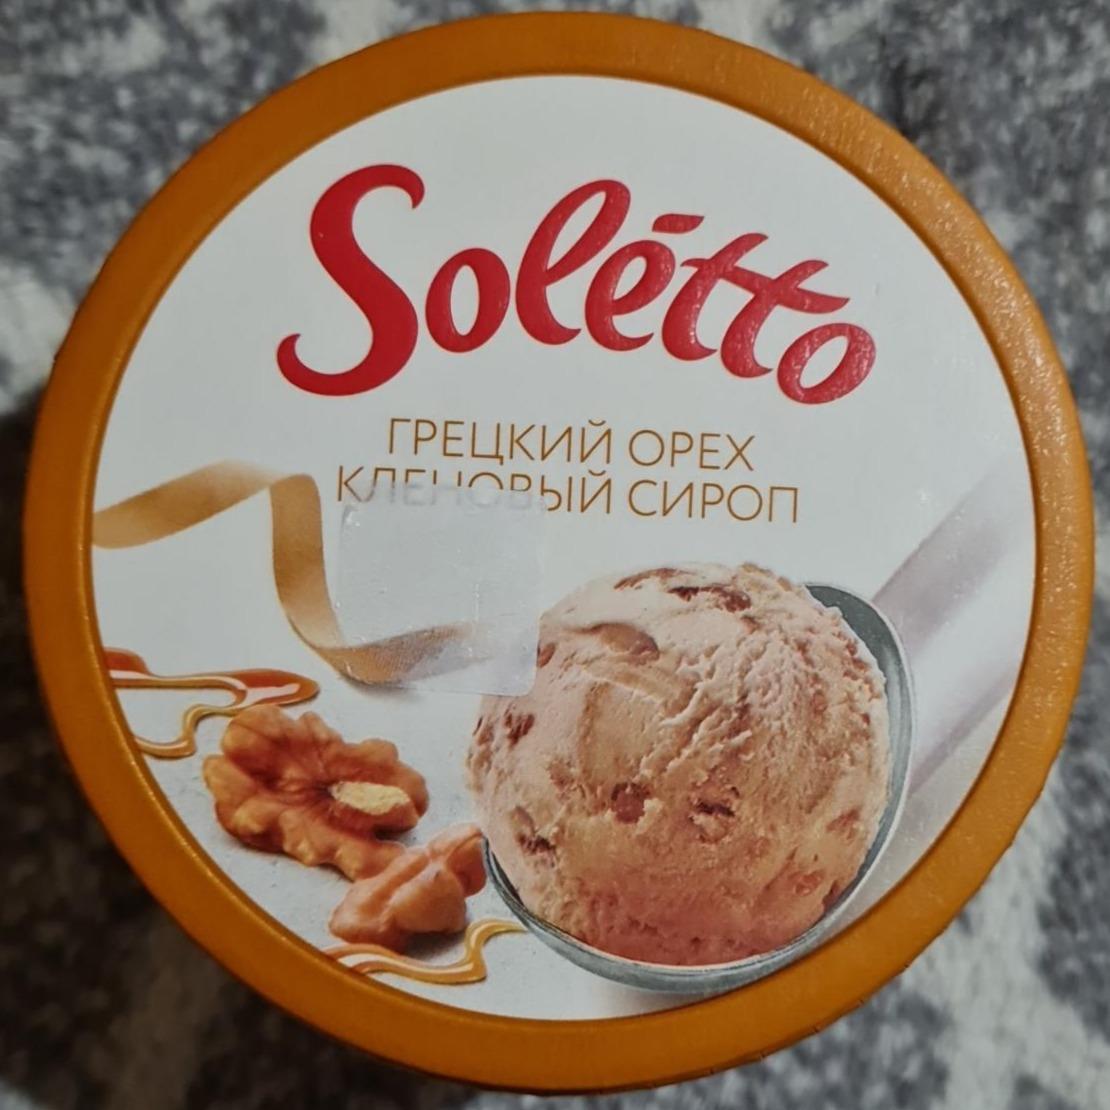 Фото - Мороженное грецкий орех кленовый сироп Soletto